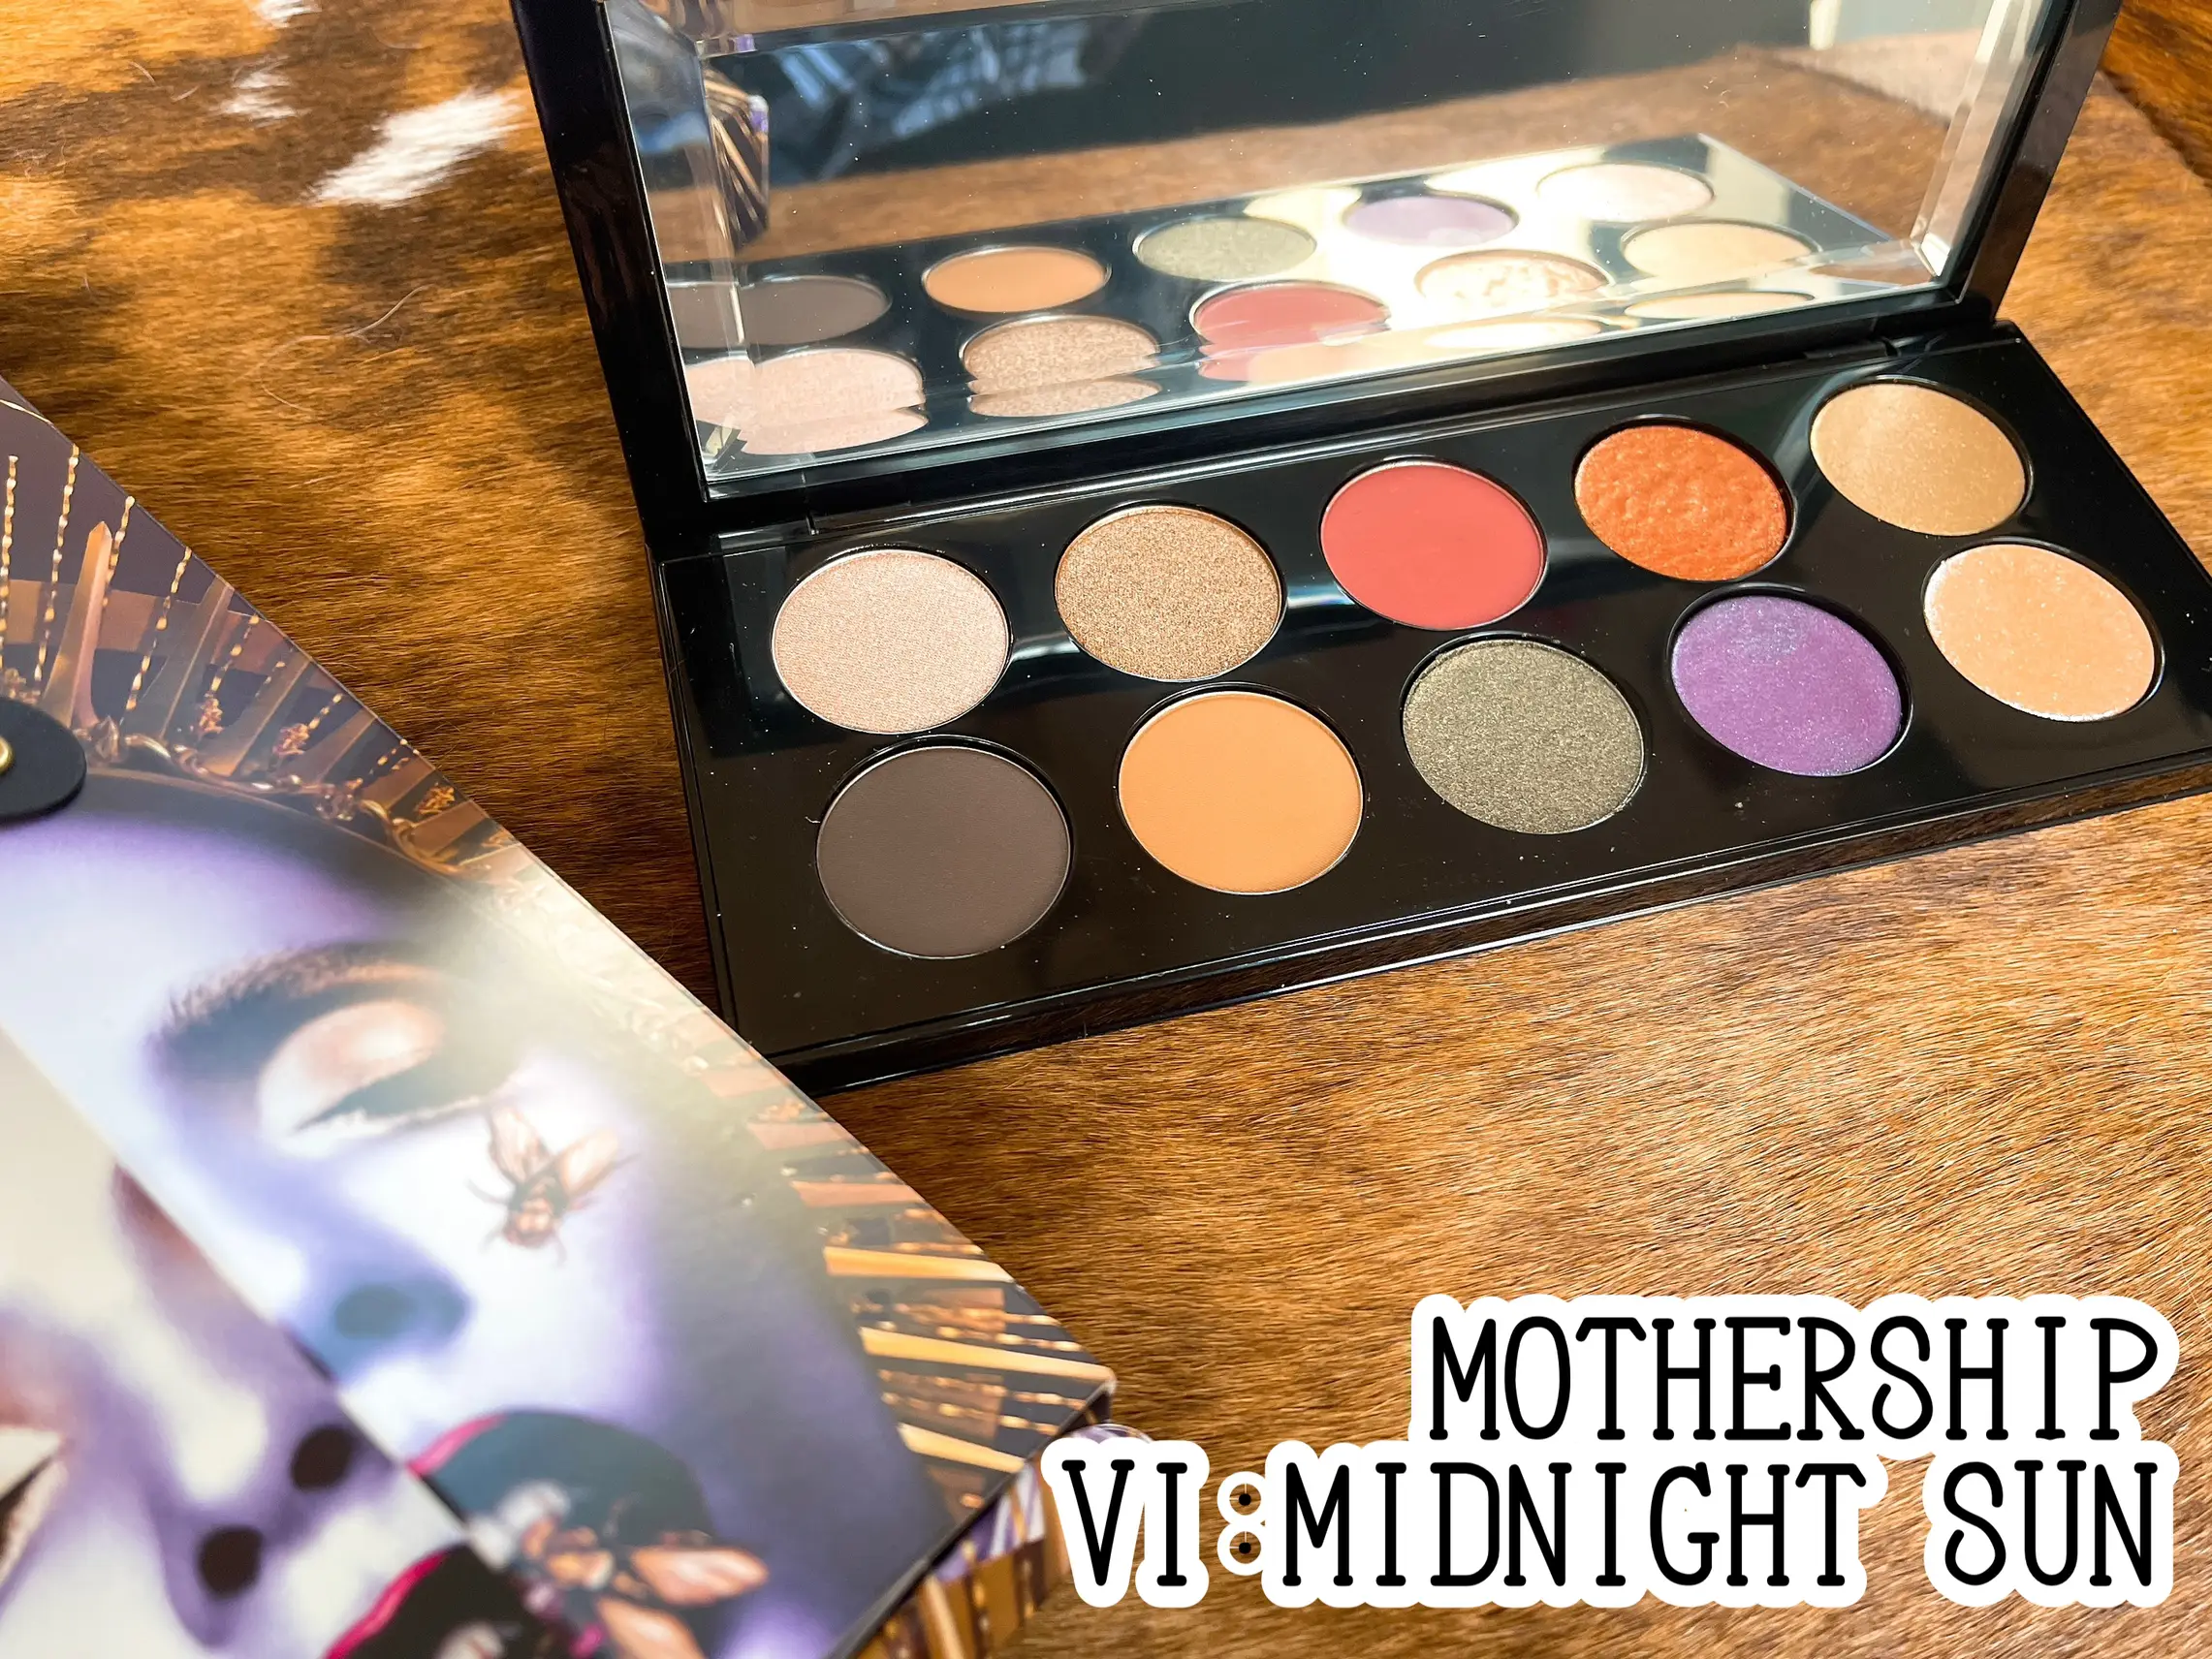 Mothership VI: Midnight Sun